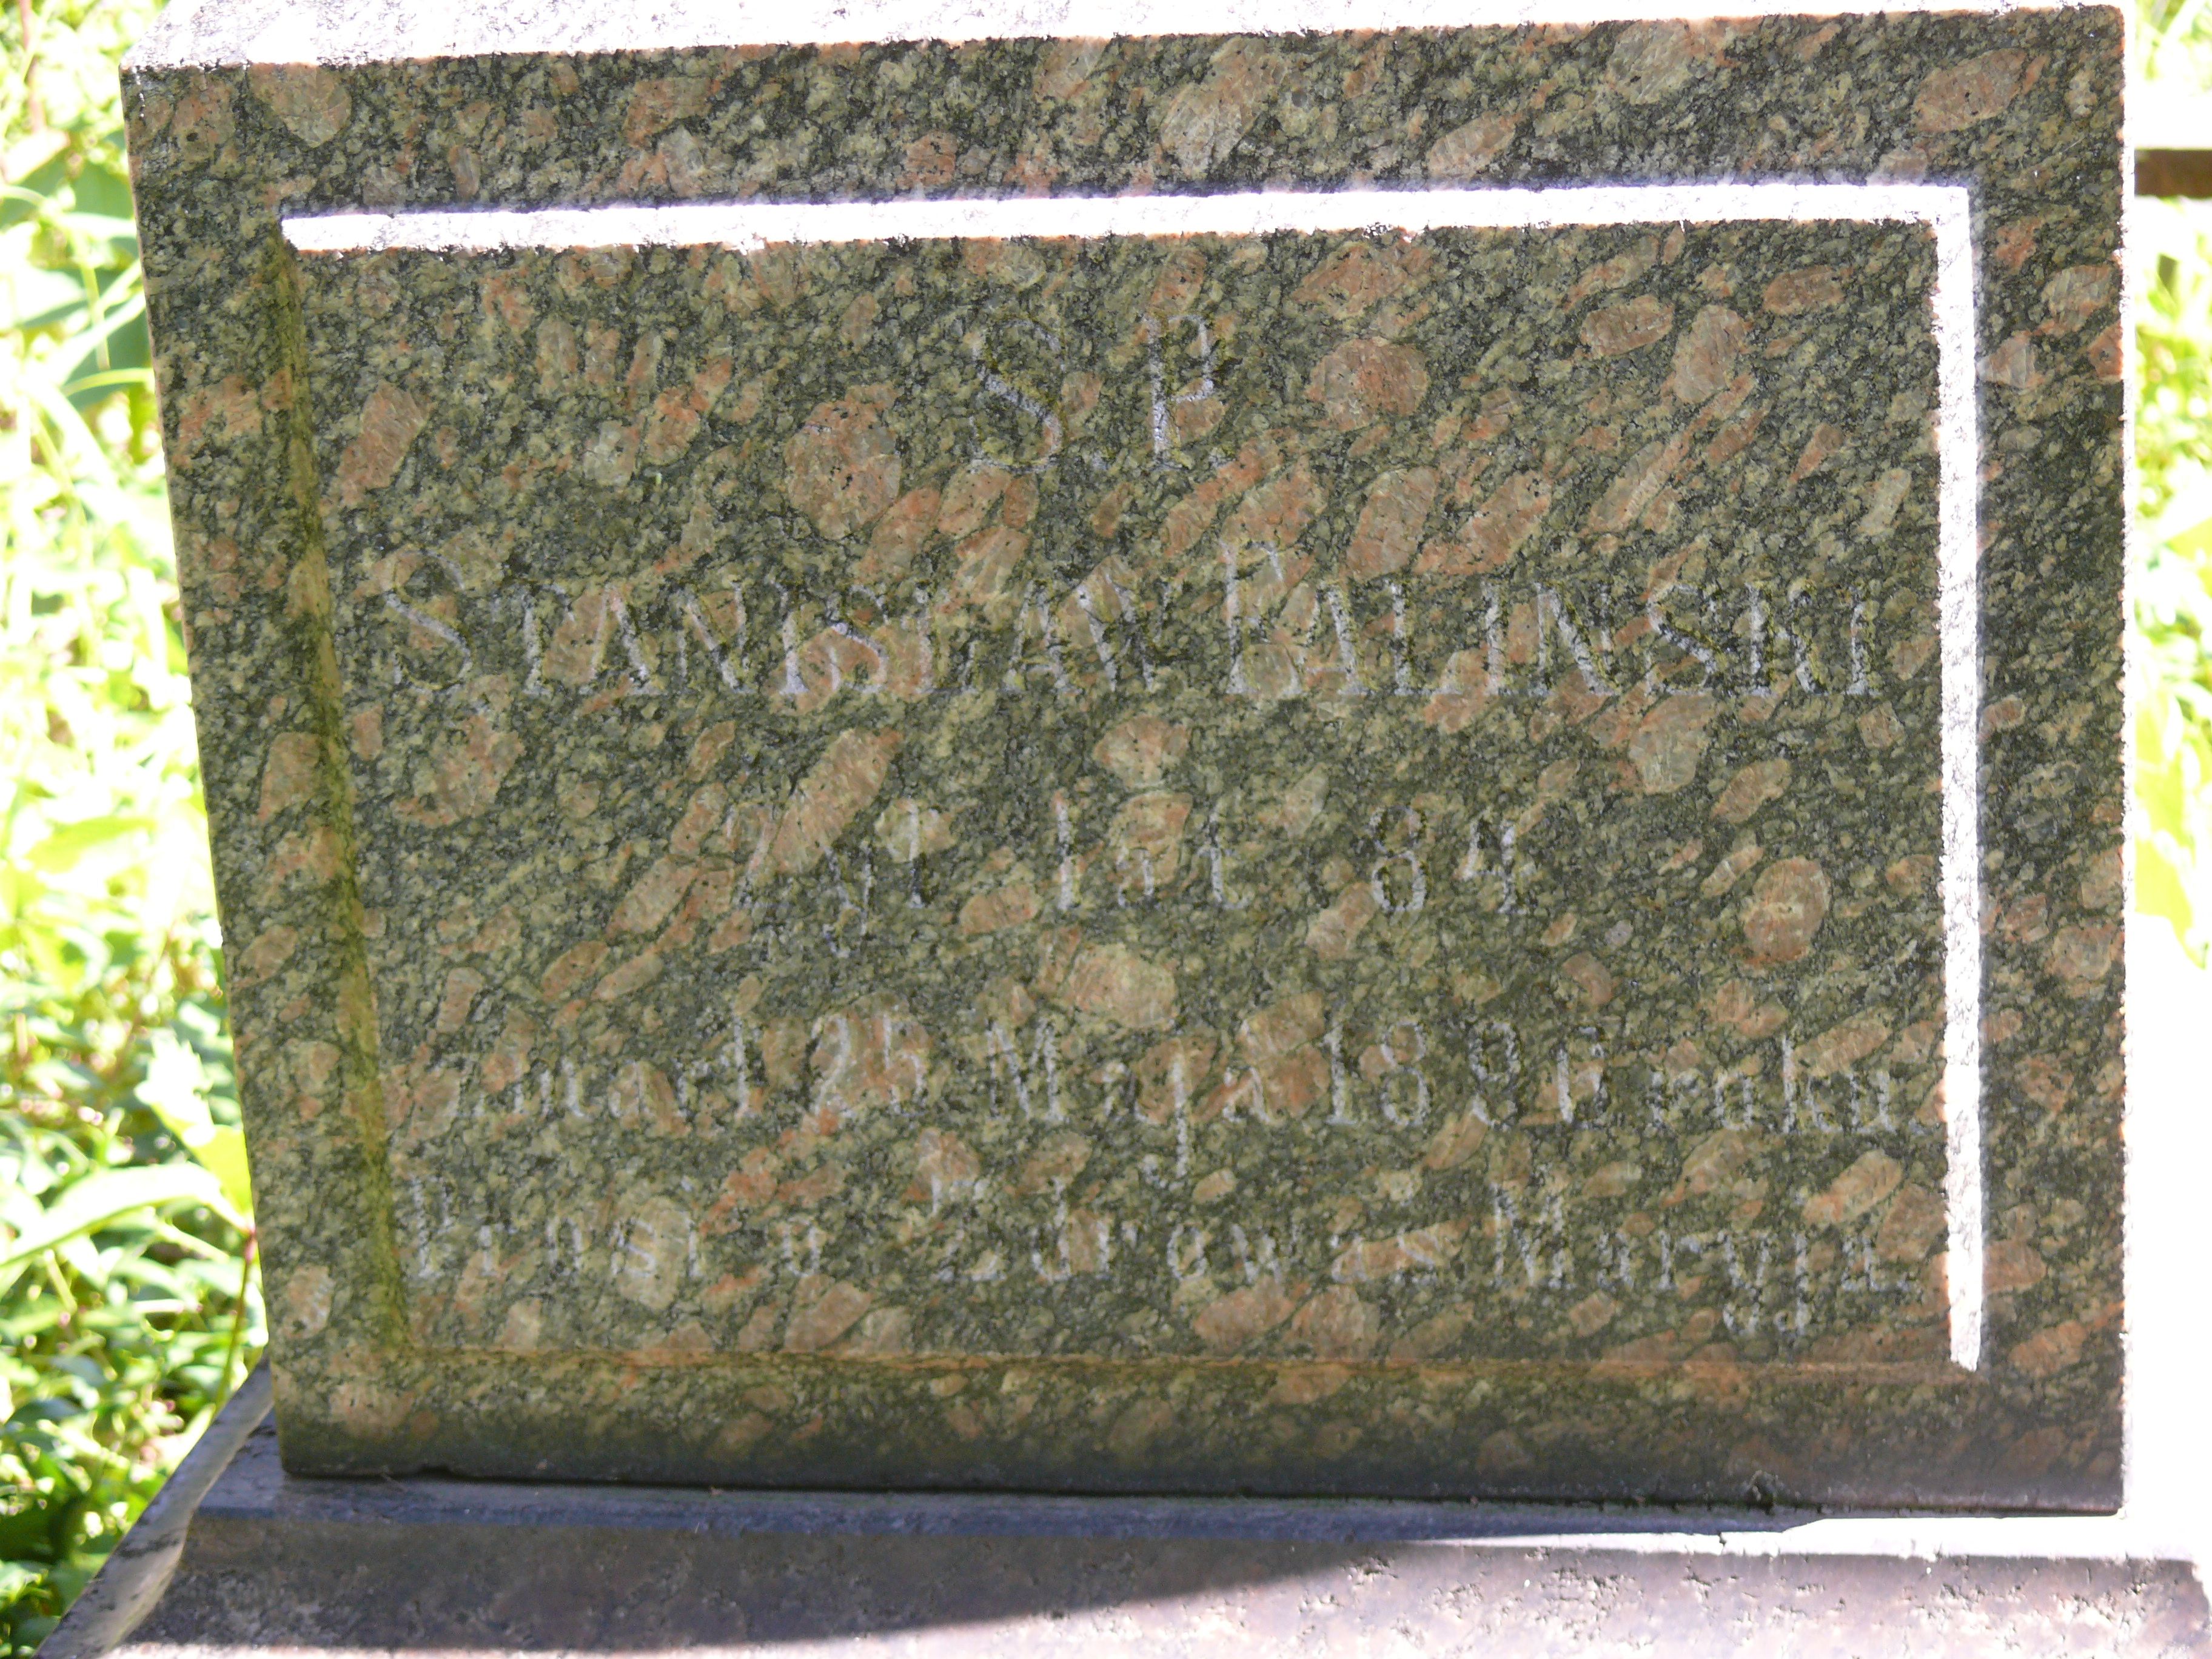 Inscription from the tombstone of Katarzyna, Mikołaj and Stanisław Faliński